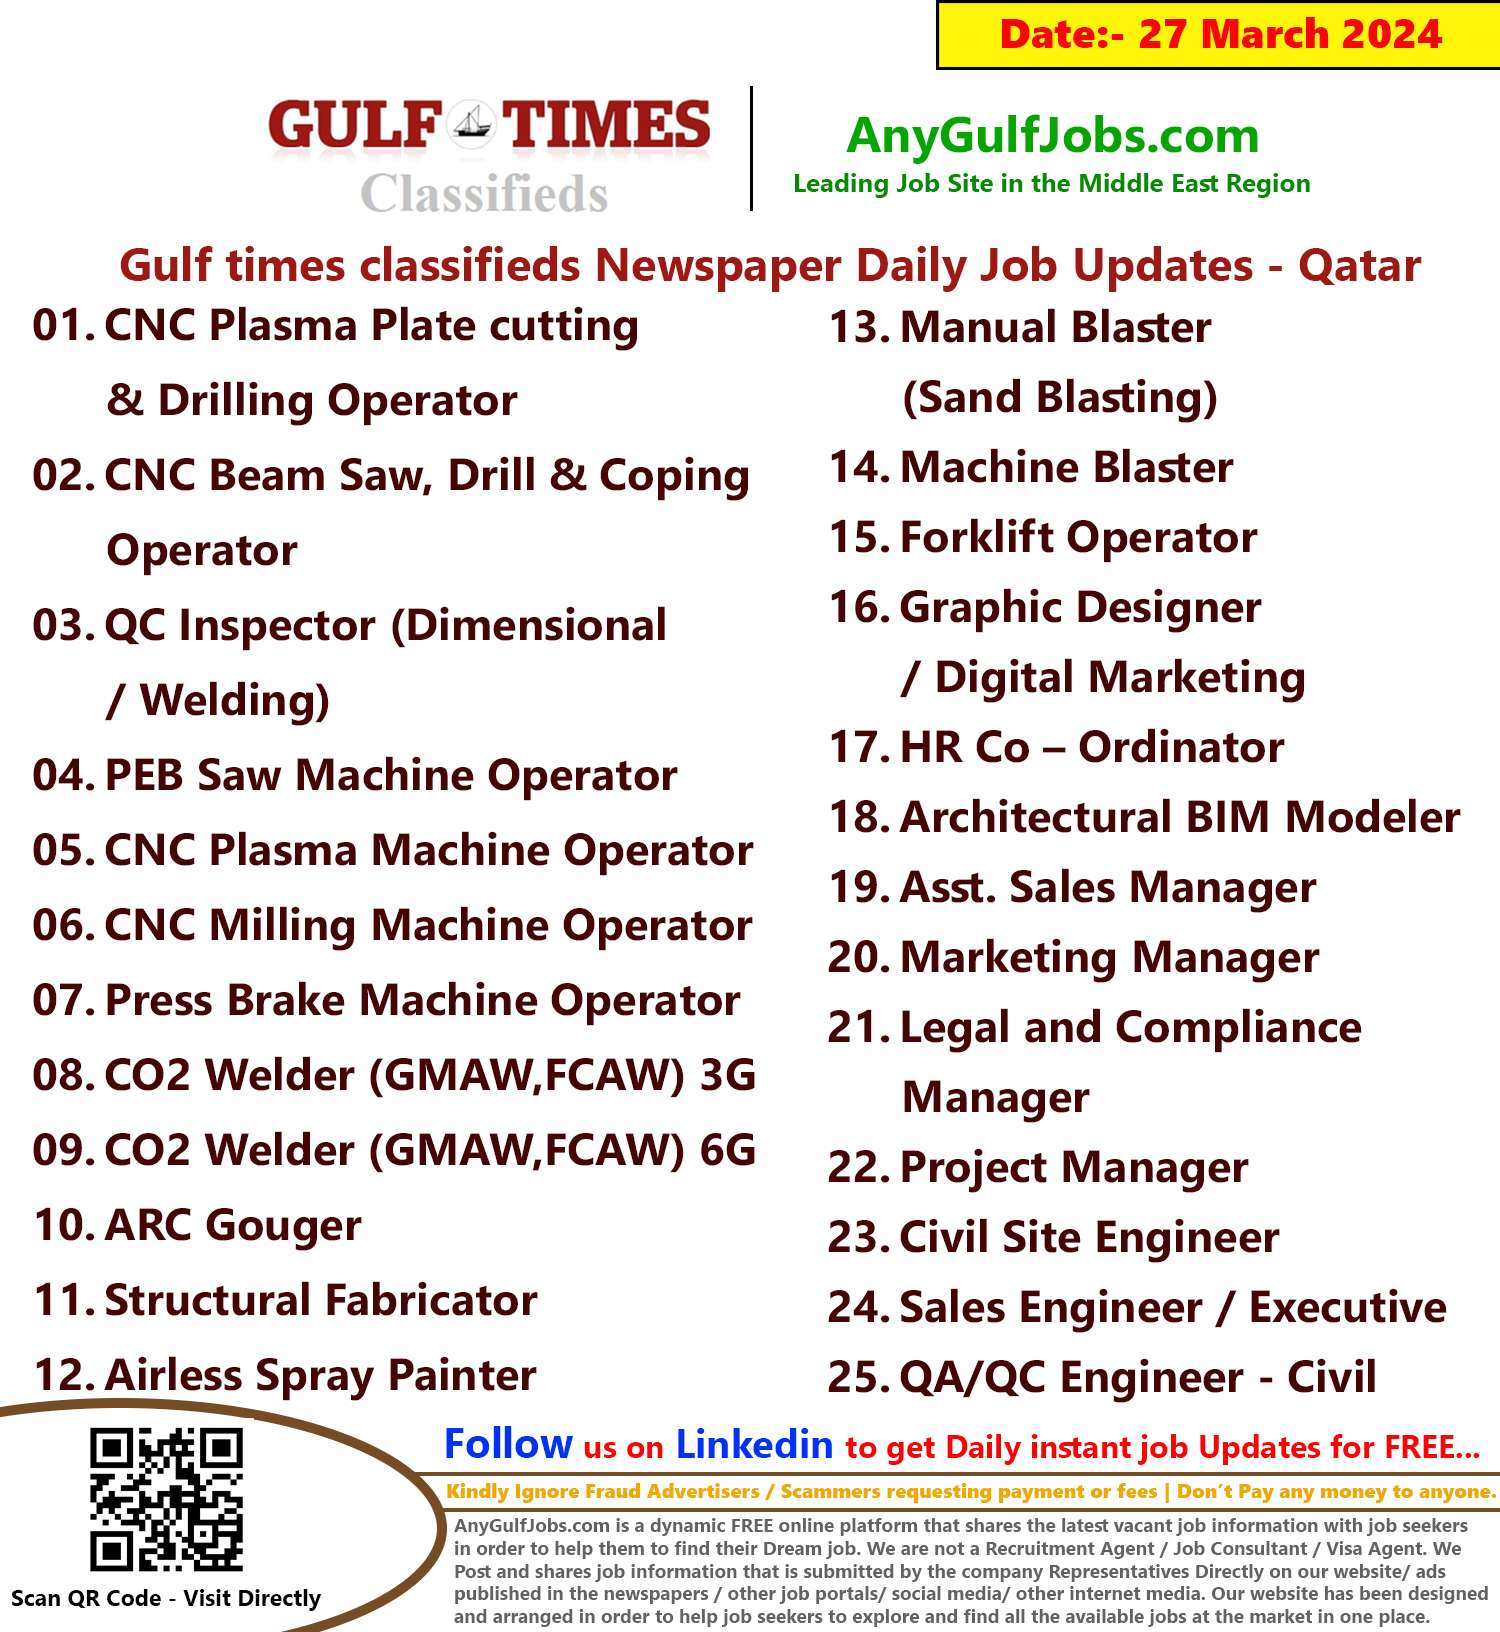 Gulf Times Classifieds Job Vacancies Qatar - 27 March 2024